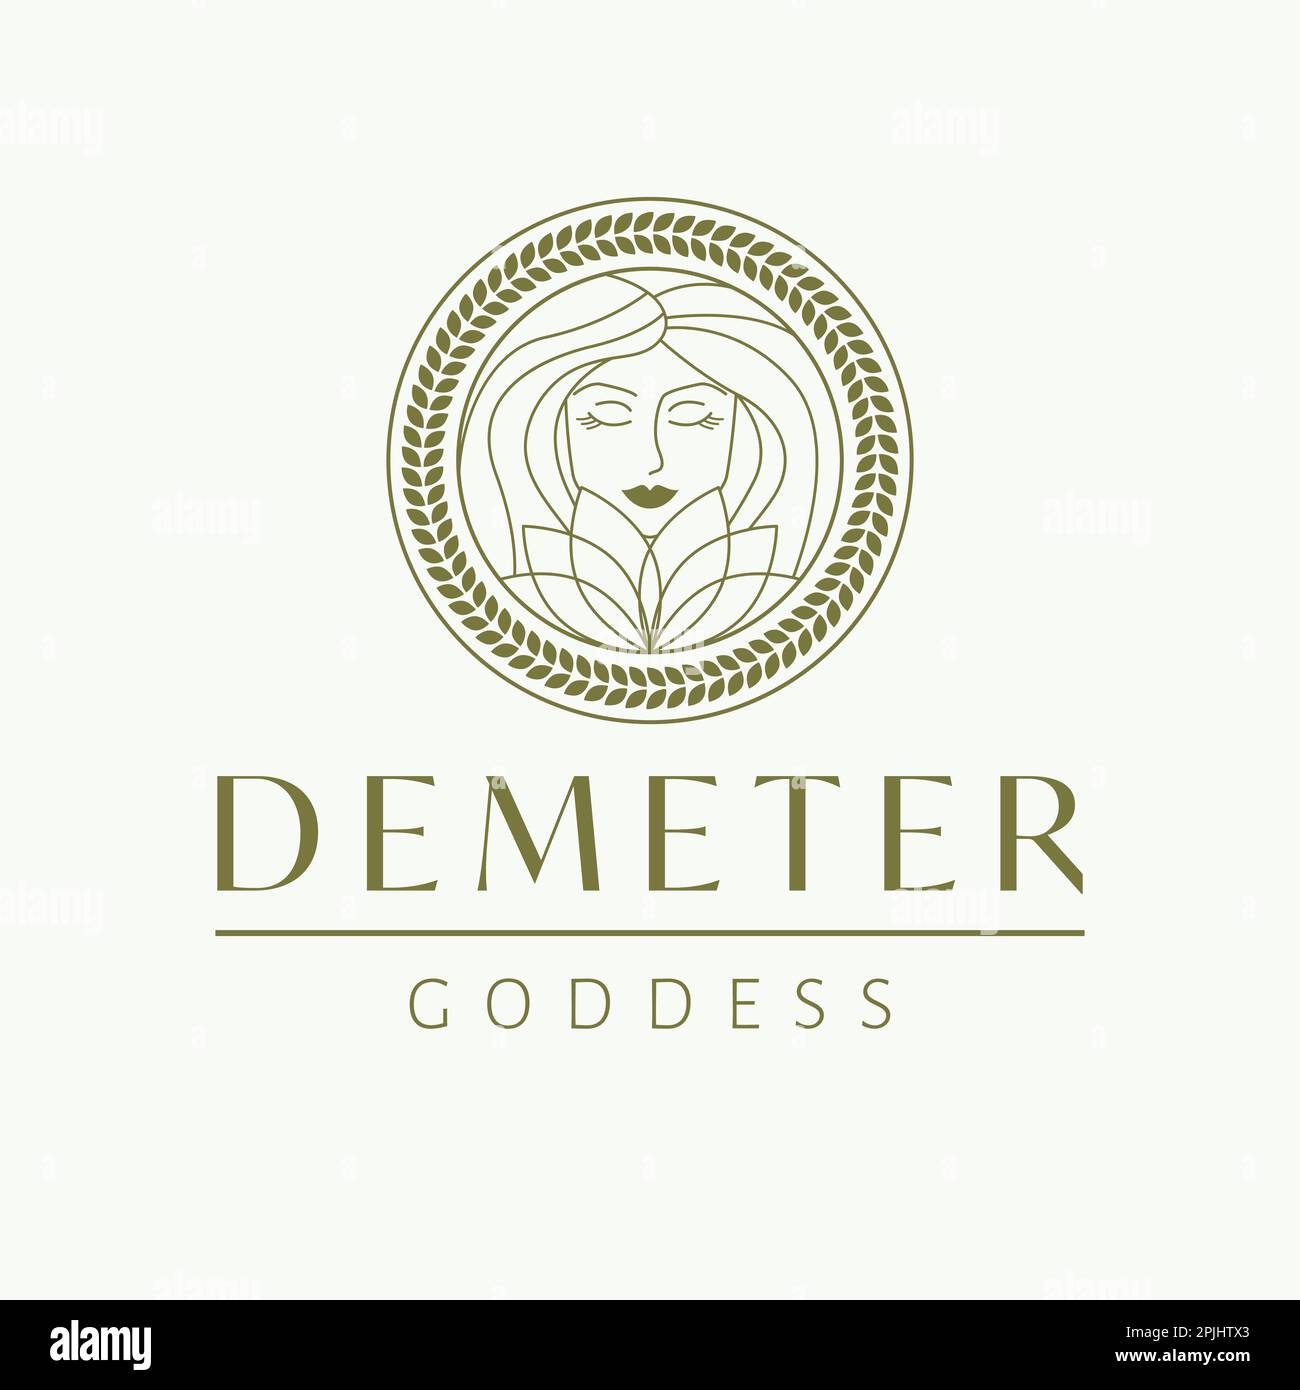 Logo Demeter déesse. Logotype de vecteur de déesse grecque. Modèle de logo de l'industrie de la beauté et de l'art. Déesse de la fertilité, patronne de l'agriculture Illustration de Vecteur